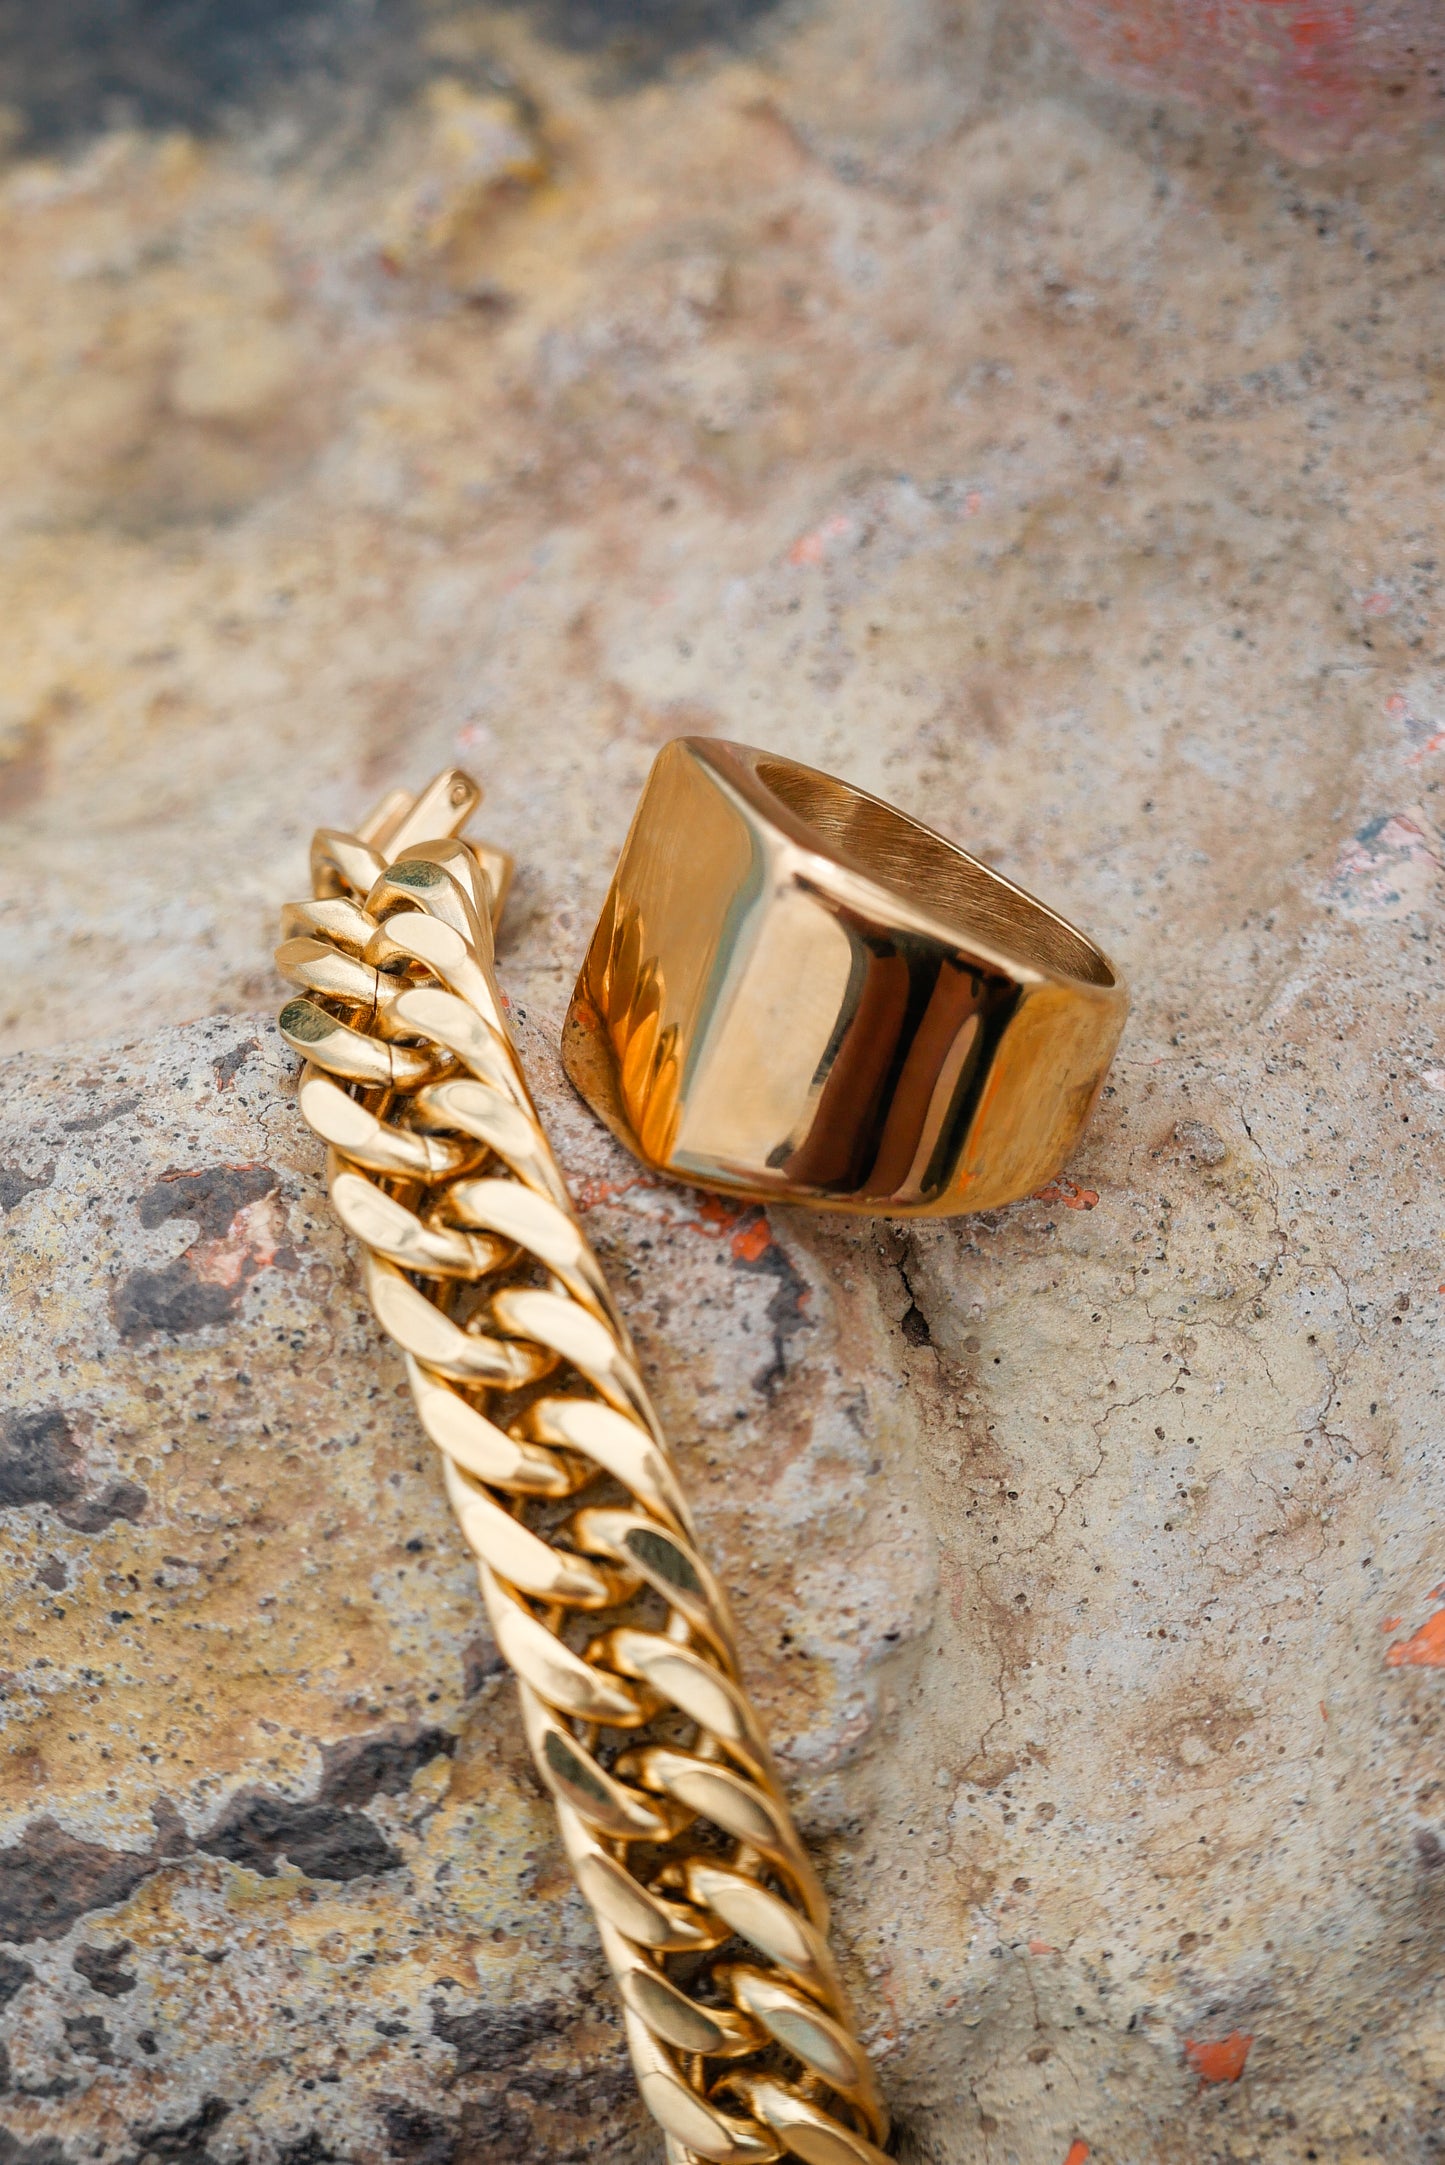 Gold amor bold mens ring and gold lets links bracelet on nature backdrop